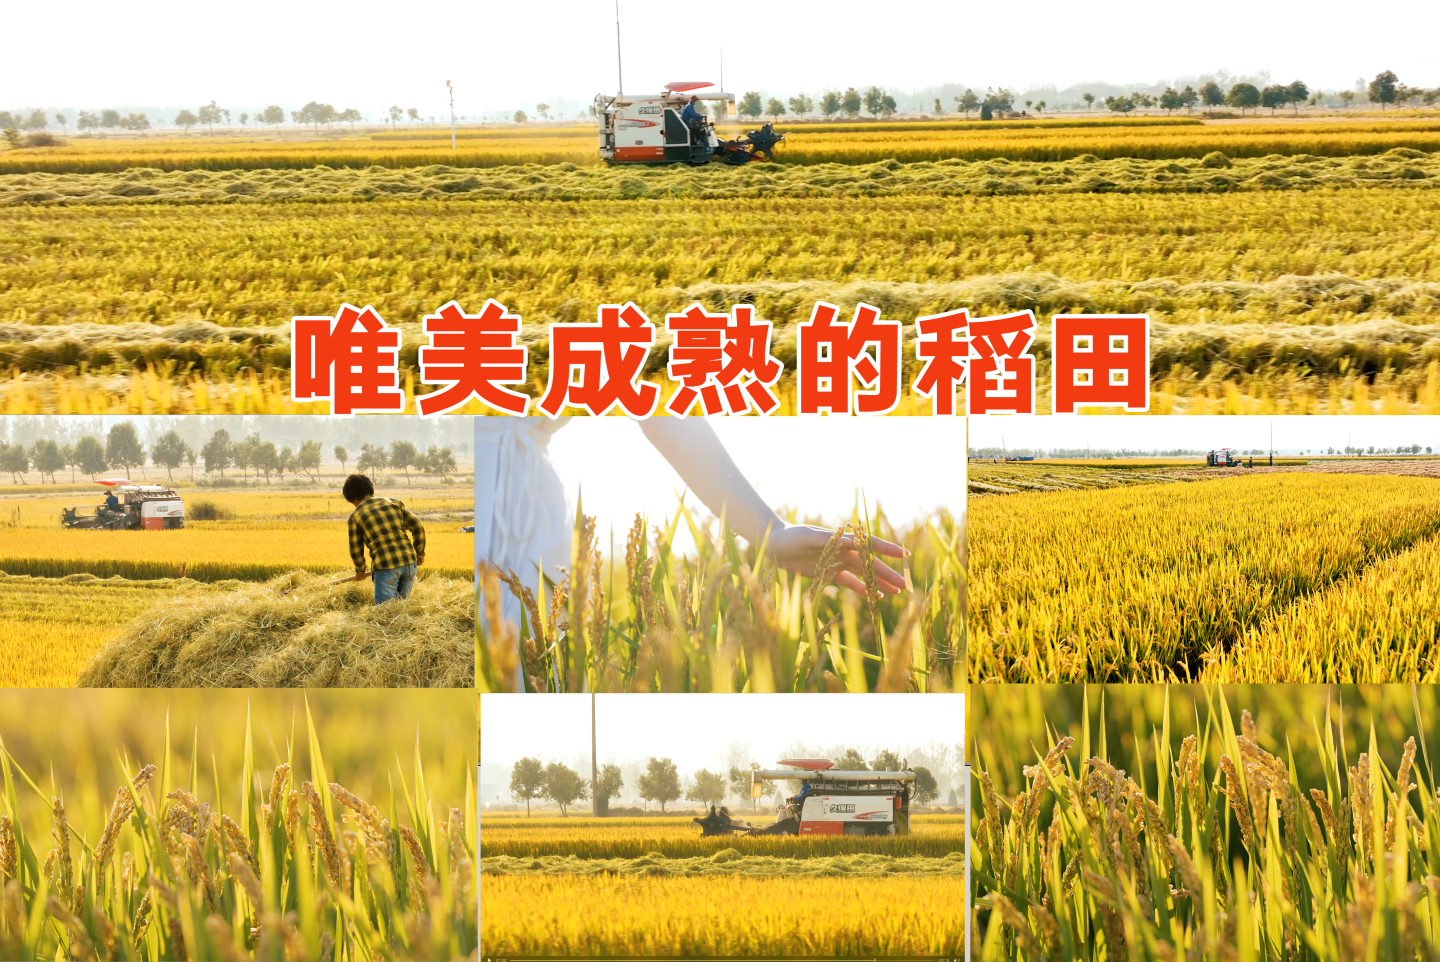 少女的手轻抚成熟的稻子收割机在收获稻谷